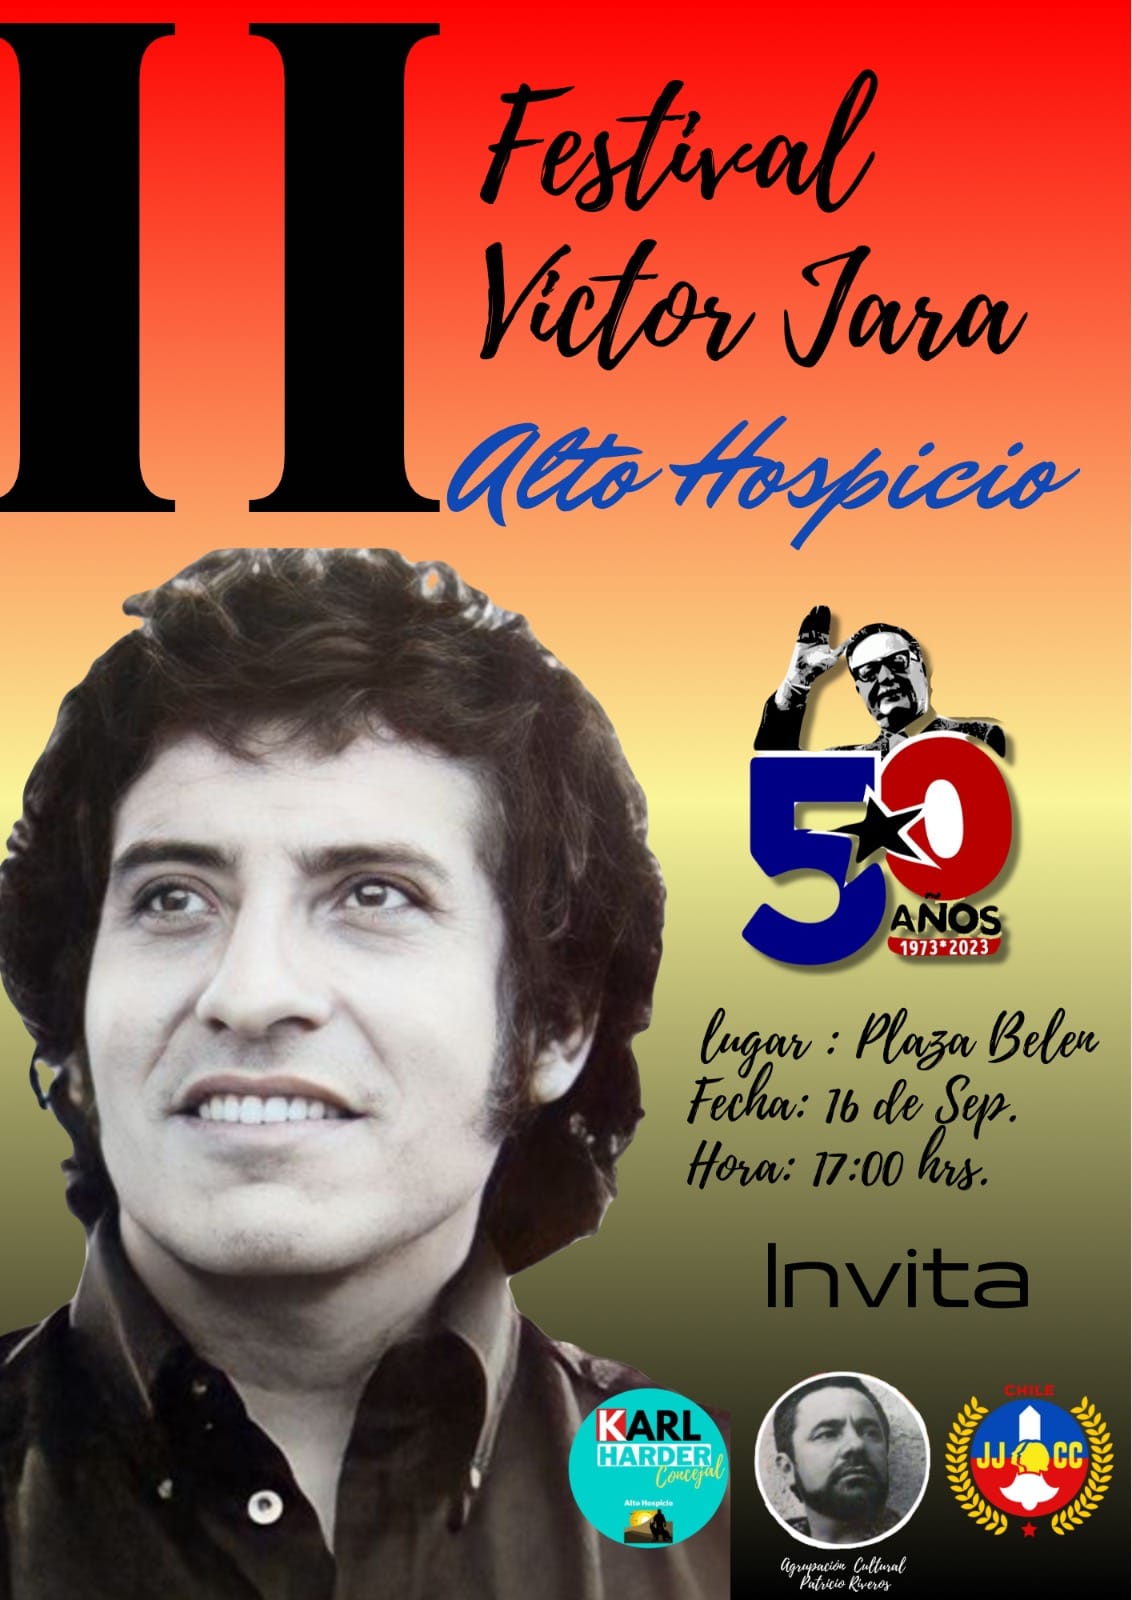 II Festival Victor Jara Alto Hospicio